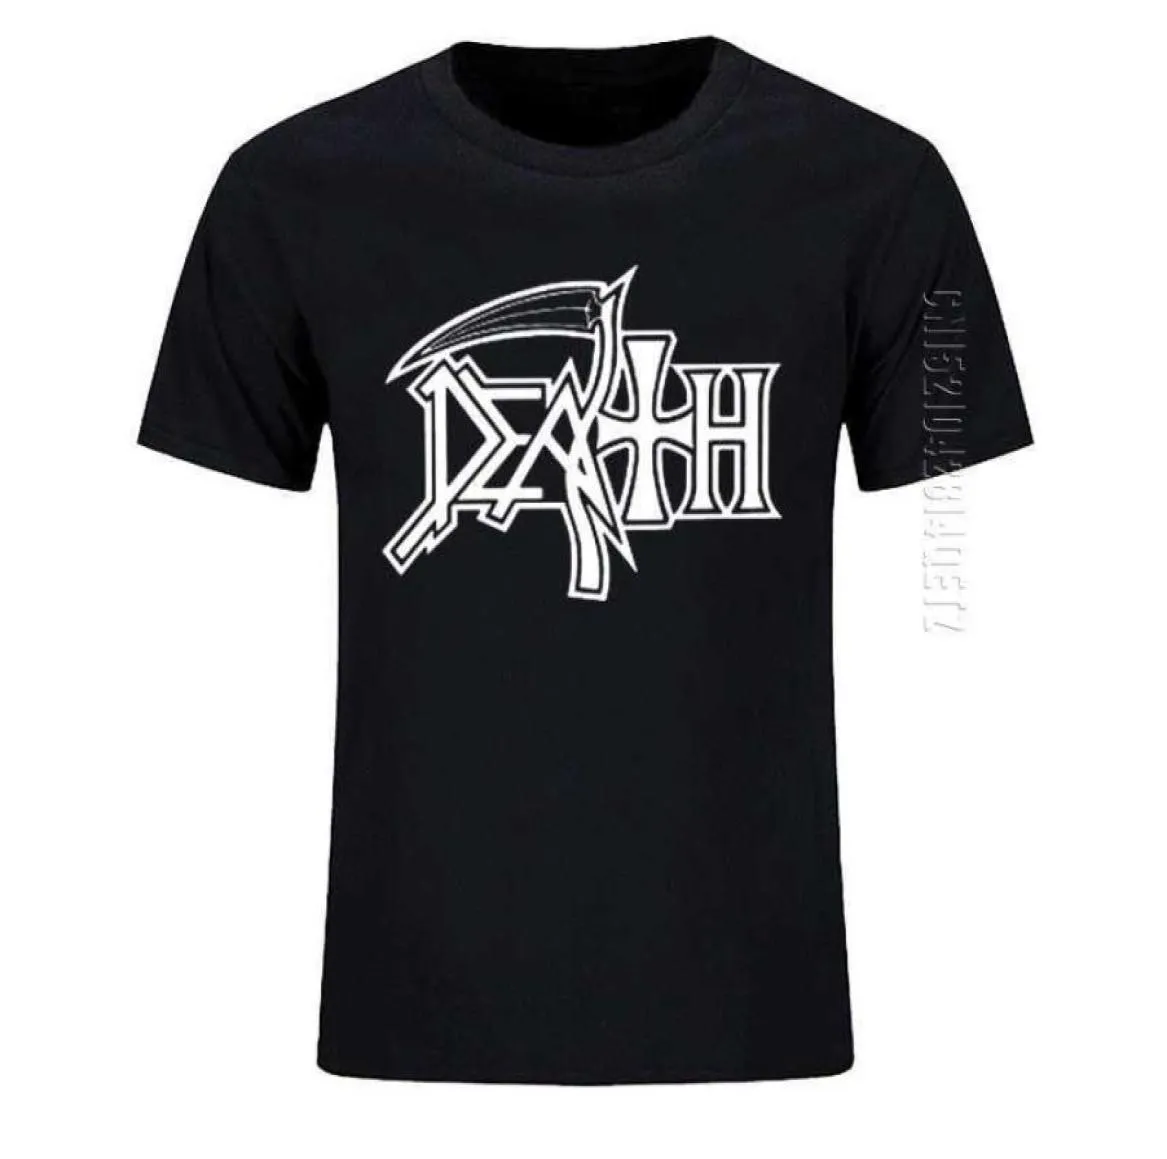 DEATH ROCK BAND HEAVY METAL Mannen T-shirt Casual Ronde Hals Oversized Katoenen T-shirt Verjaardagscadeau T-shirt 2106292548729